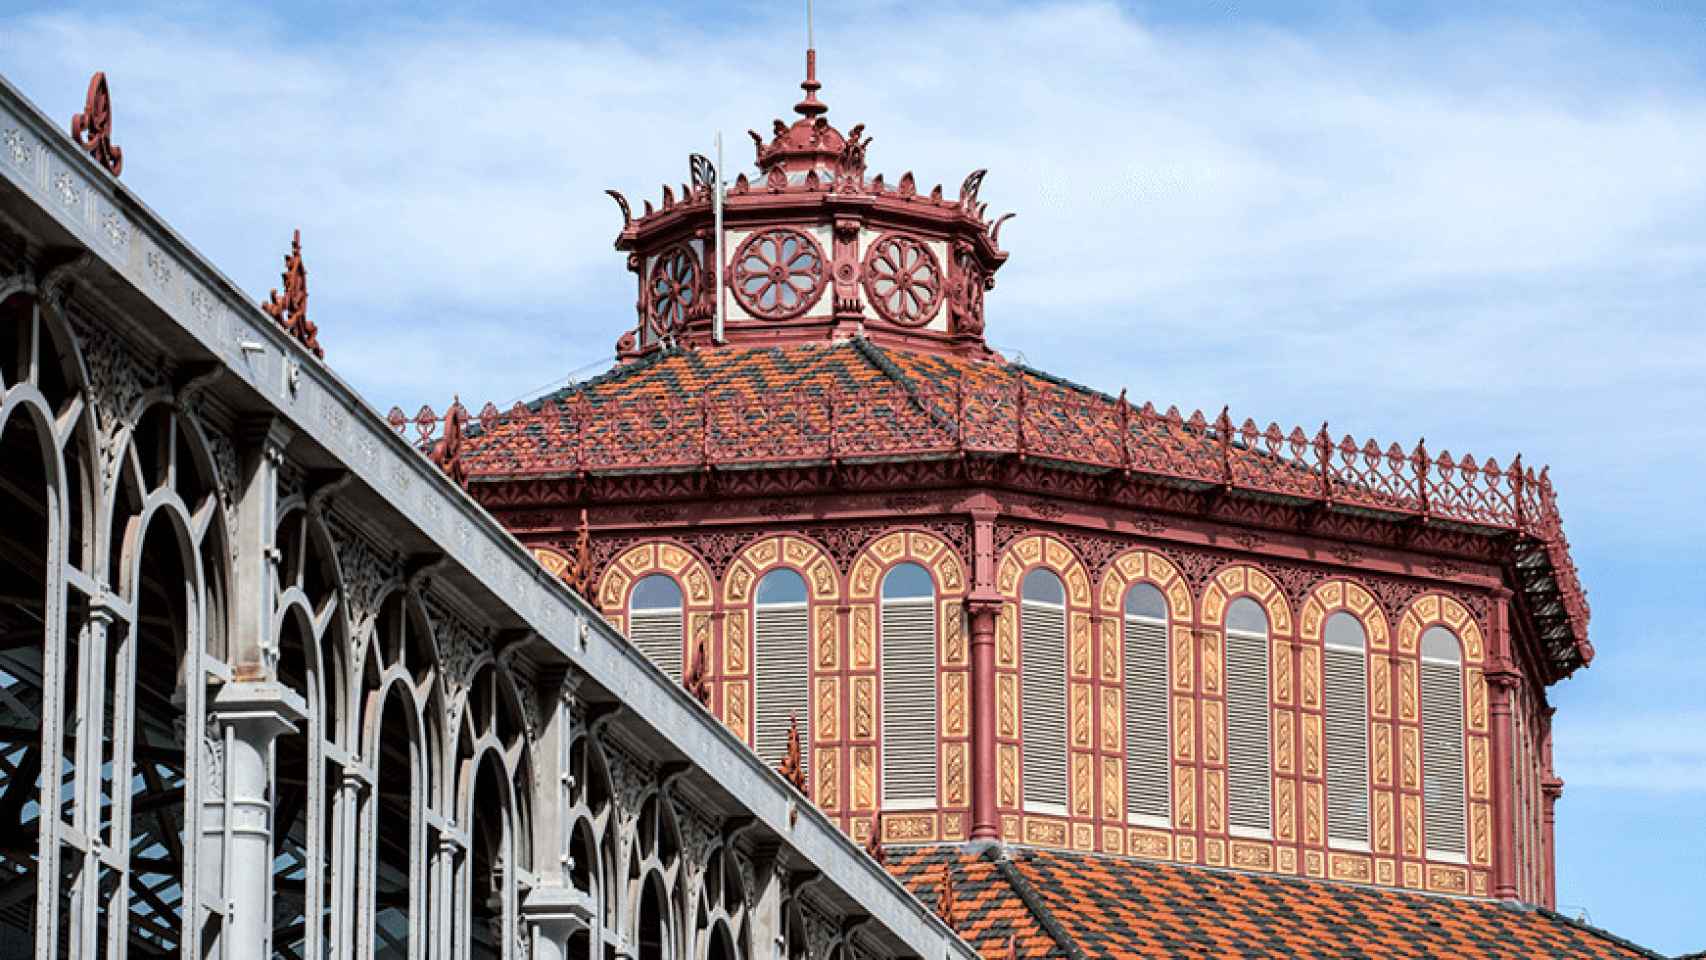 La cúpula reformada del Mercat de Sant Antoni / Archivo